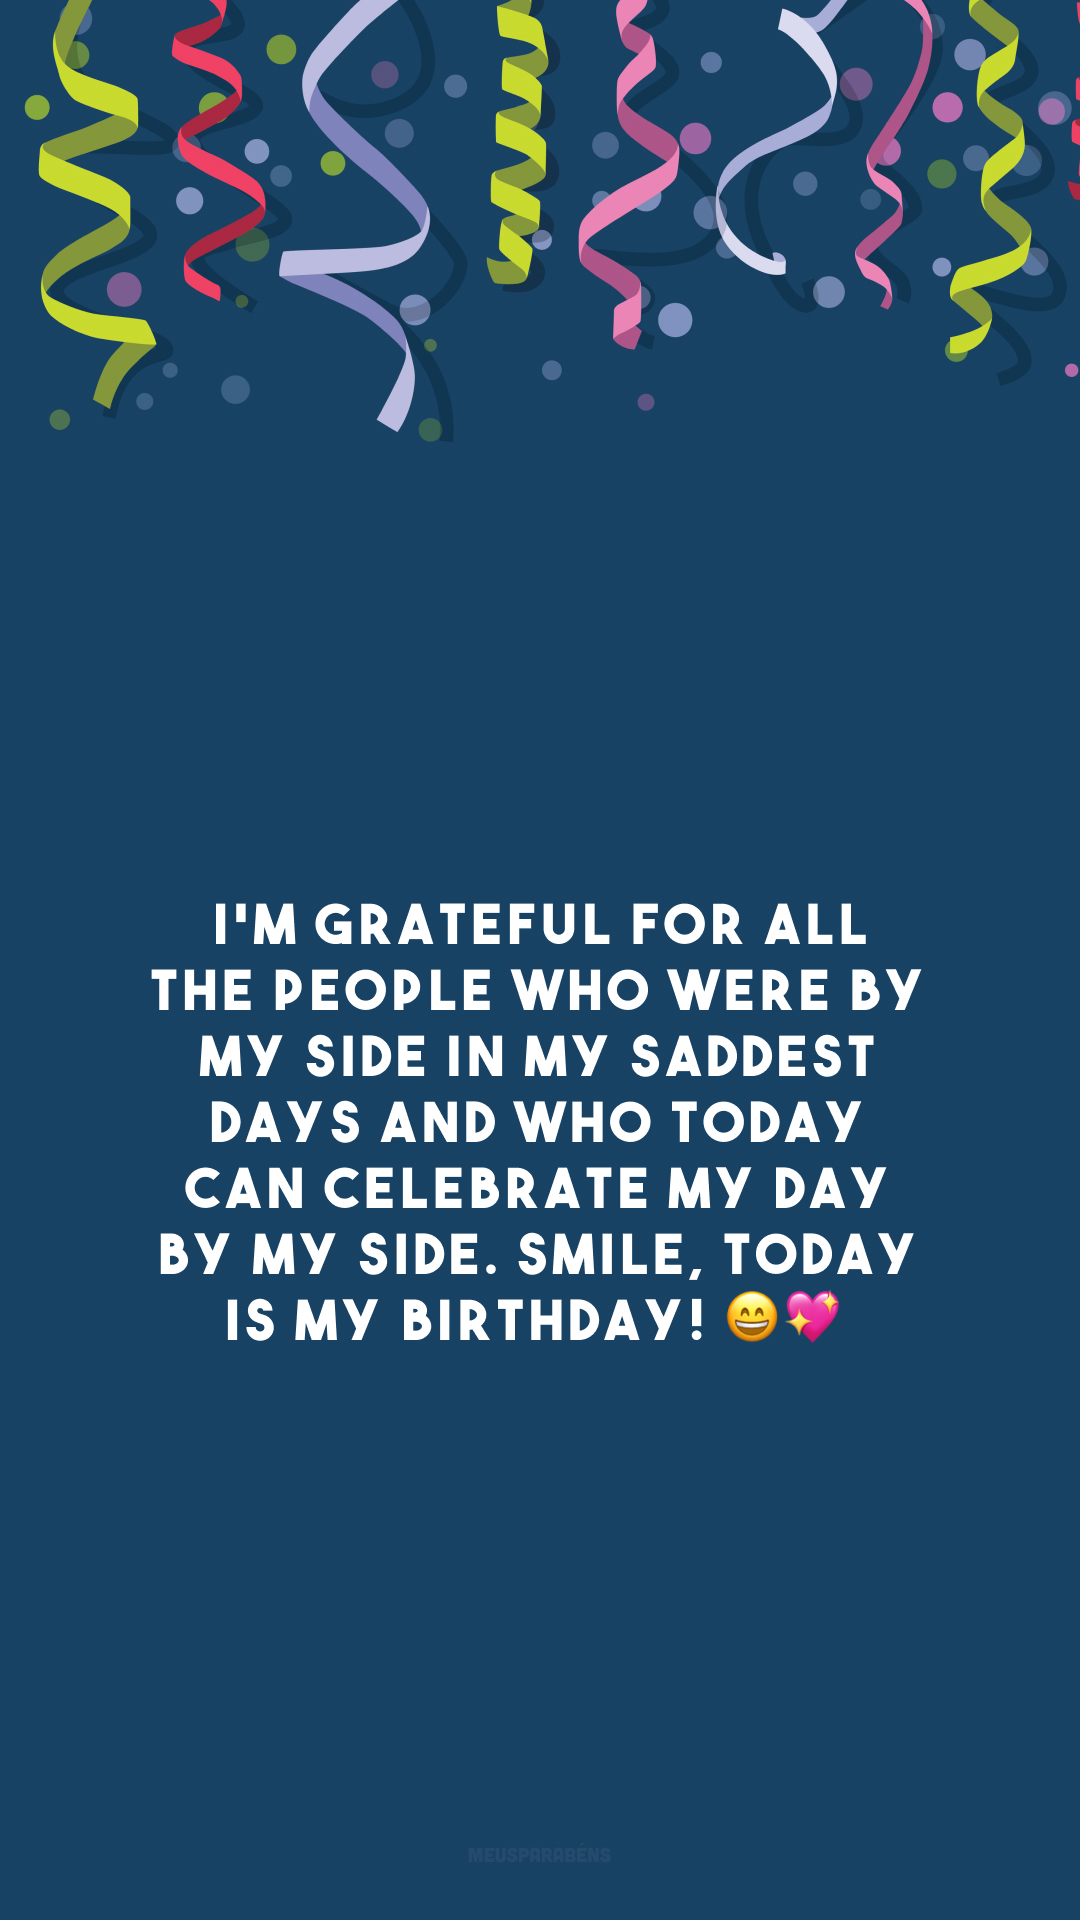 I'm grateful for all the people who were by my side in my saddest days and who today can celebrate my day by my side. Smile, today is my birthday! 😄💖

<p>(Sou grato por todas as pessoas que estiveram ao meu lado nos meus dias mais tristes e que hoje pode comemorar meu dia ao meu lado. Sorria, hoje é meu aniversário!)<p>